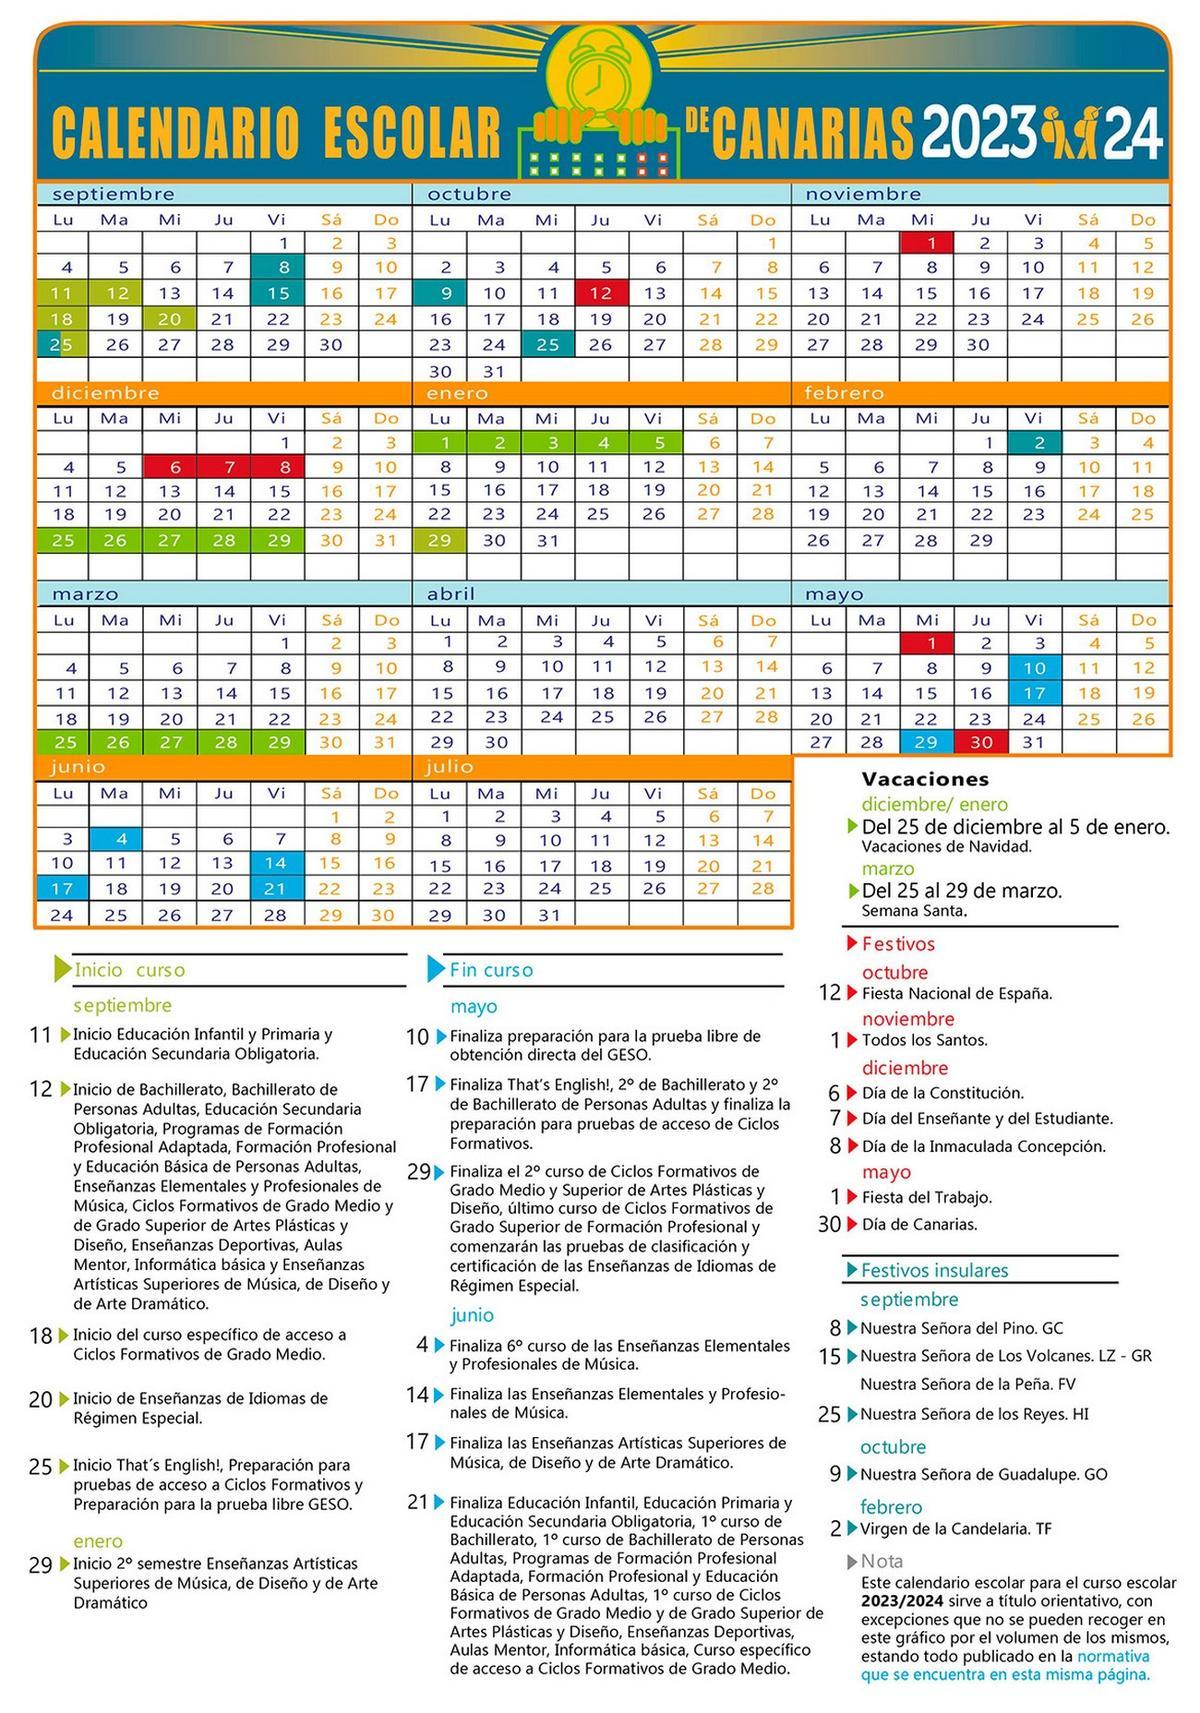 Calendario escolar 2023-2024 en Canarias: las fechas claves del nuevo curso.